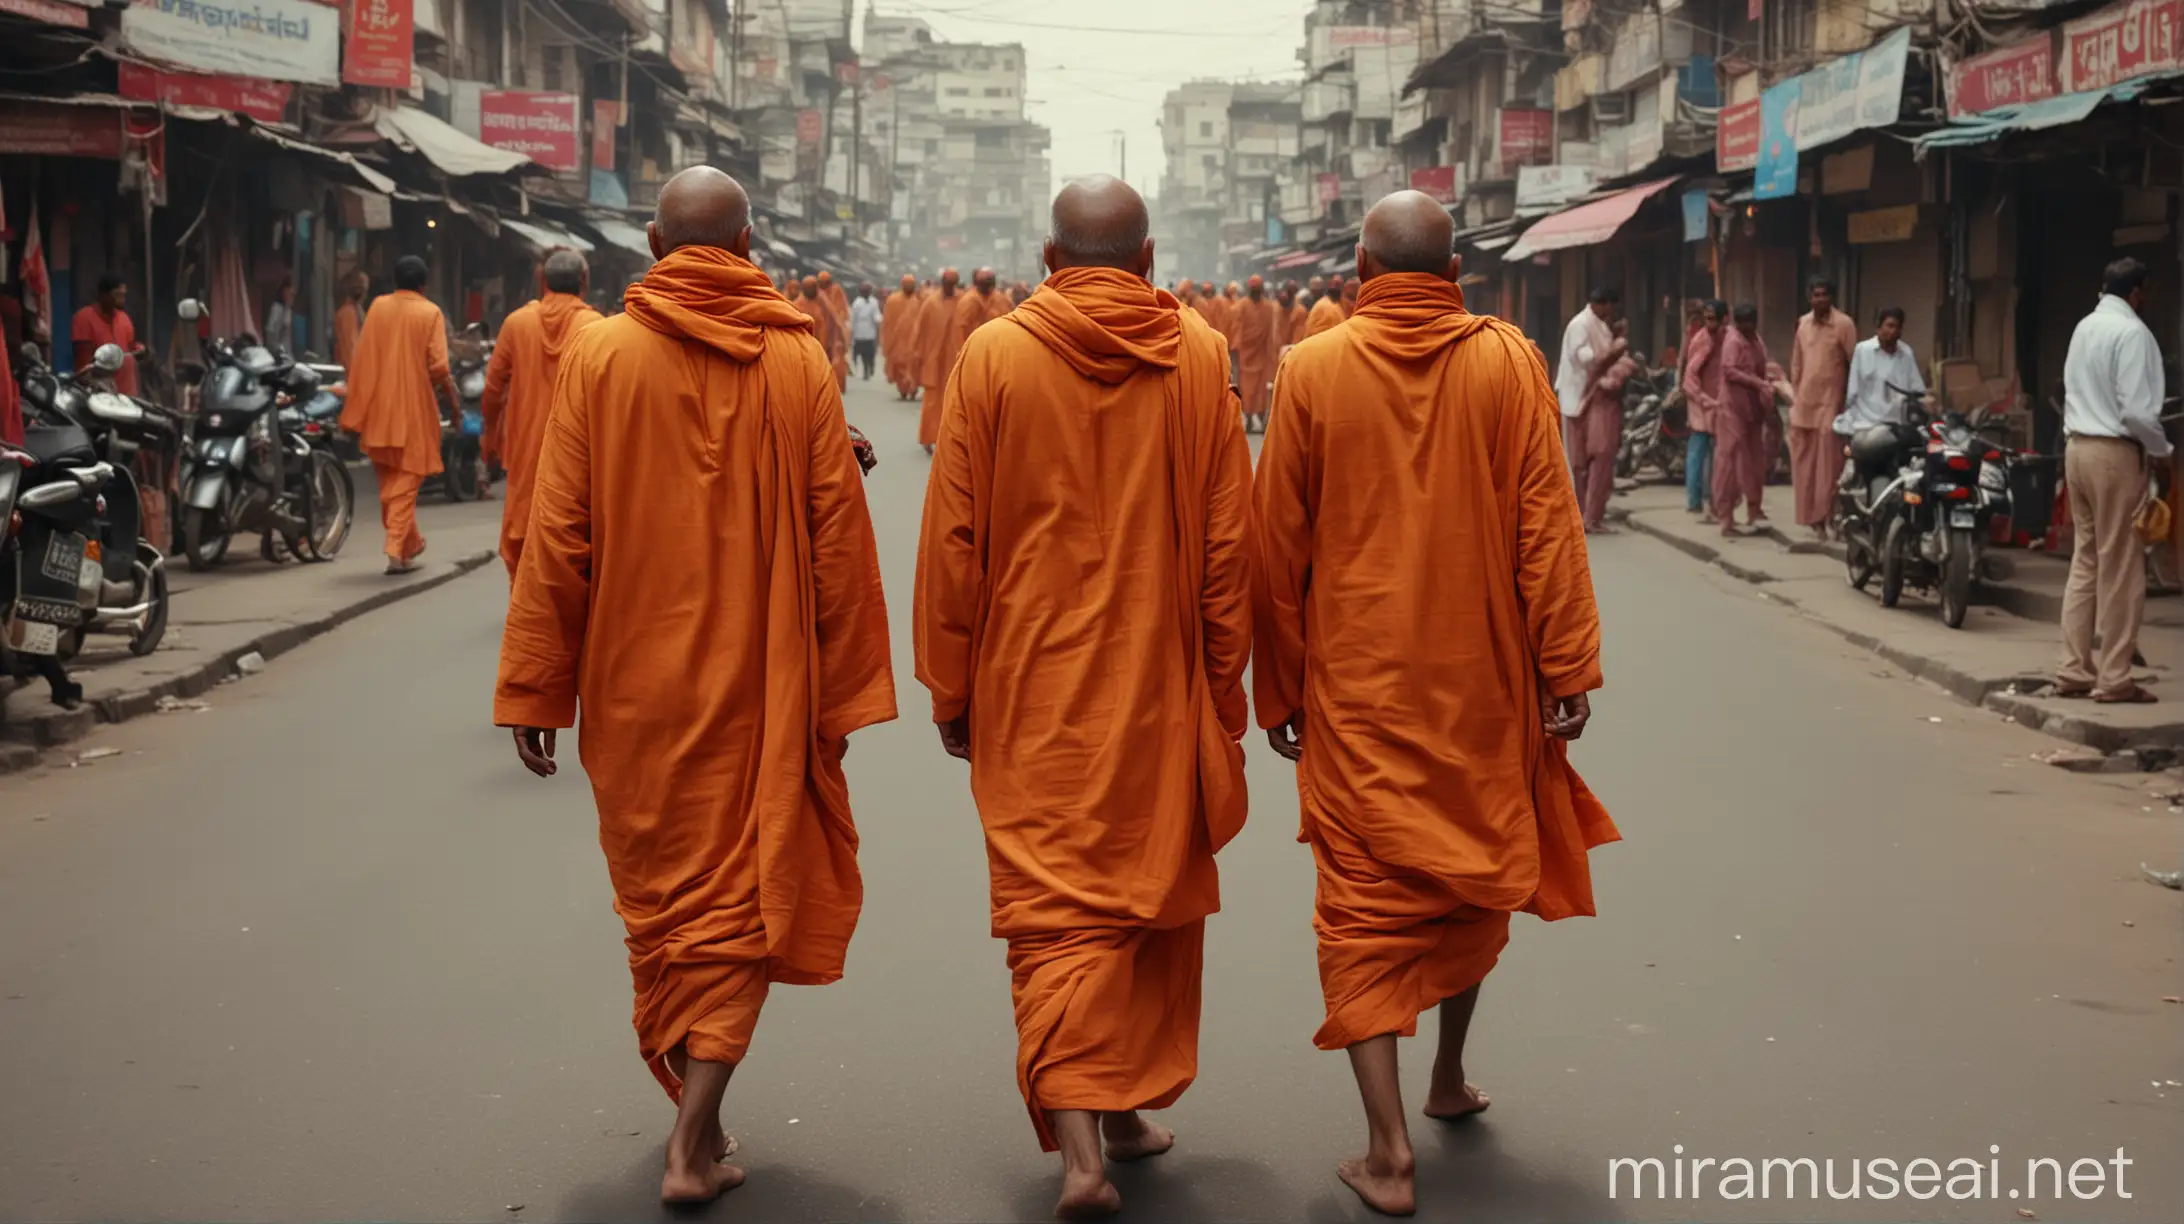 3 indian sadhus wear orange dress, walking on busy indian road, shot from behind